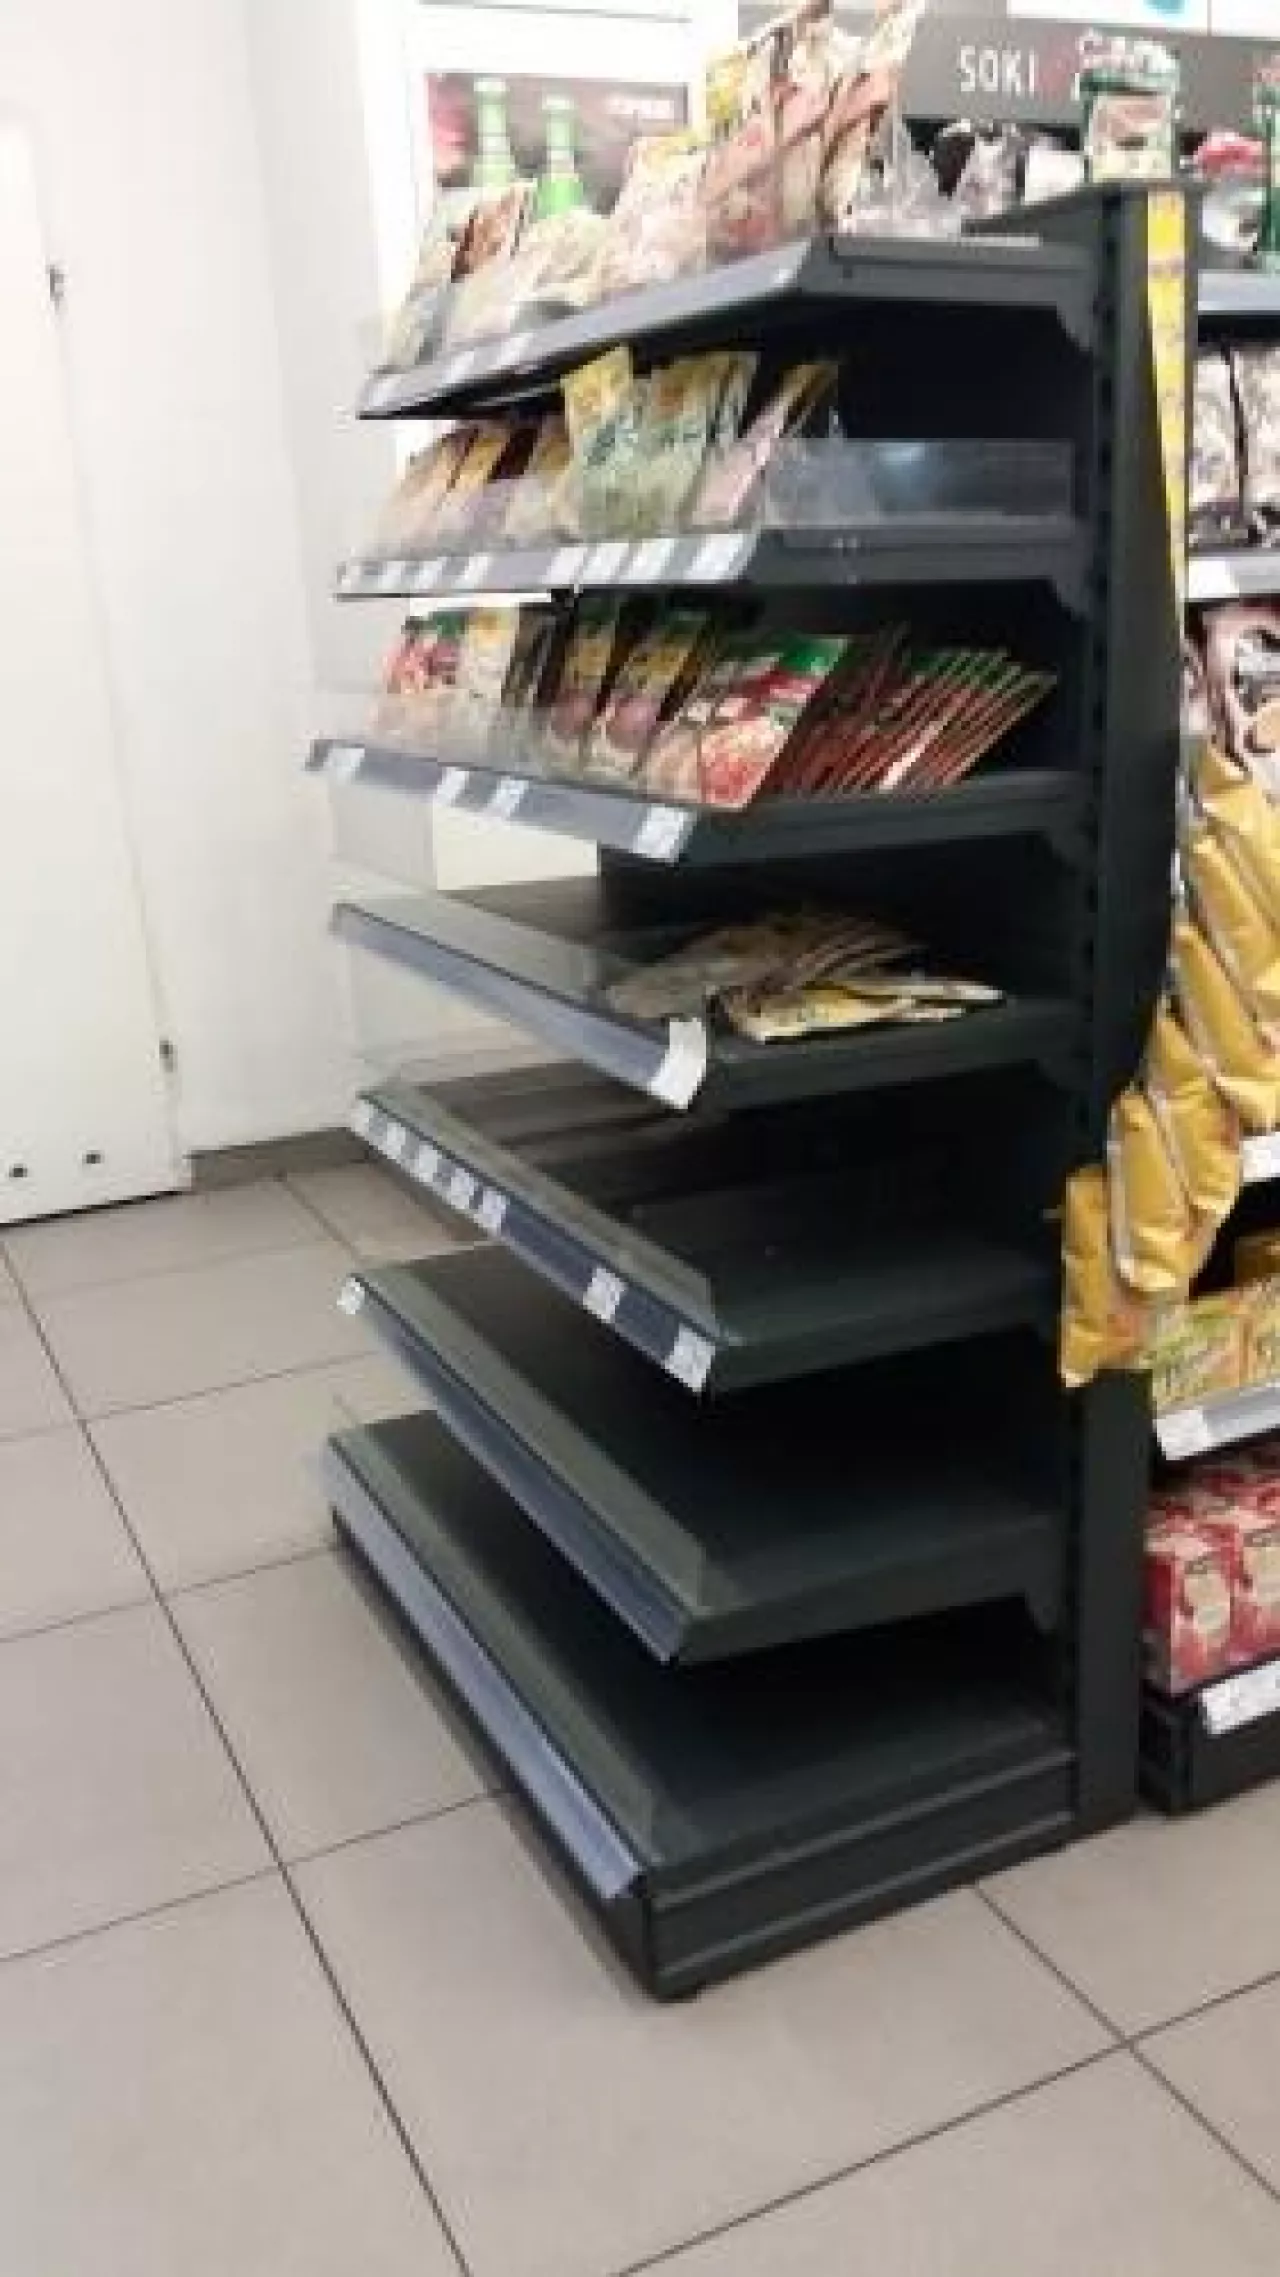 Klienci sklepów Małpka Express coraz częściej witani są przez puste półki (fot. wiadomoscihandlowe.pl)